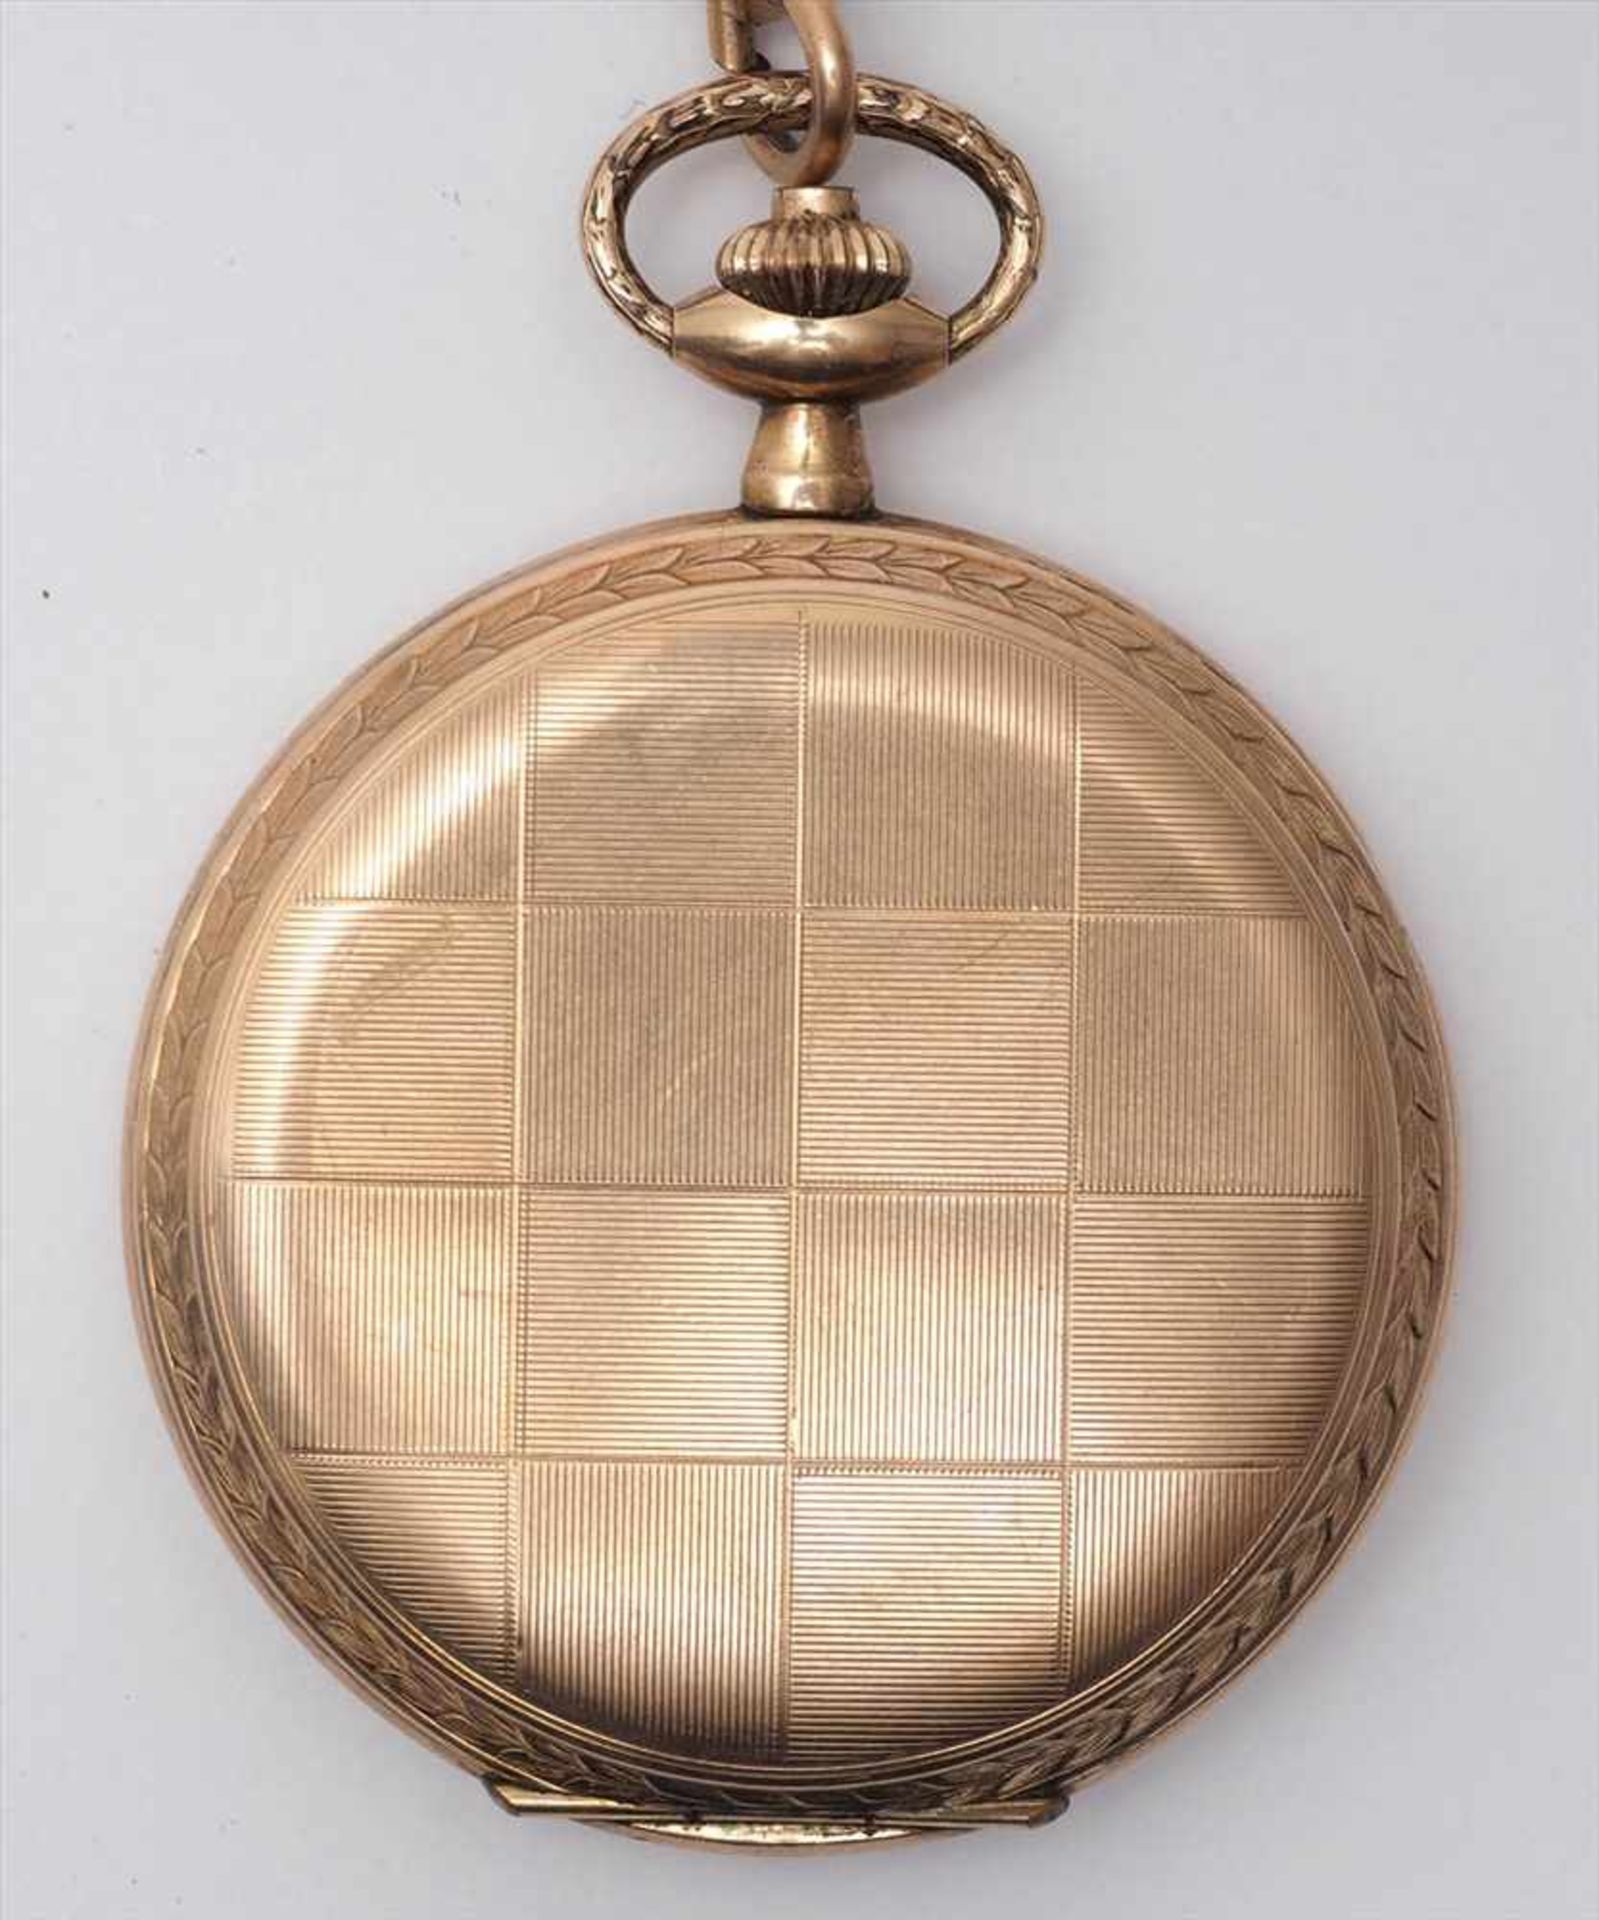 Savonette, 20er/30er JahreGeometrisch graviertes Gehäuse aus vergoldetem Metall. Goldfarbenes - Bild 3 aus 8